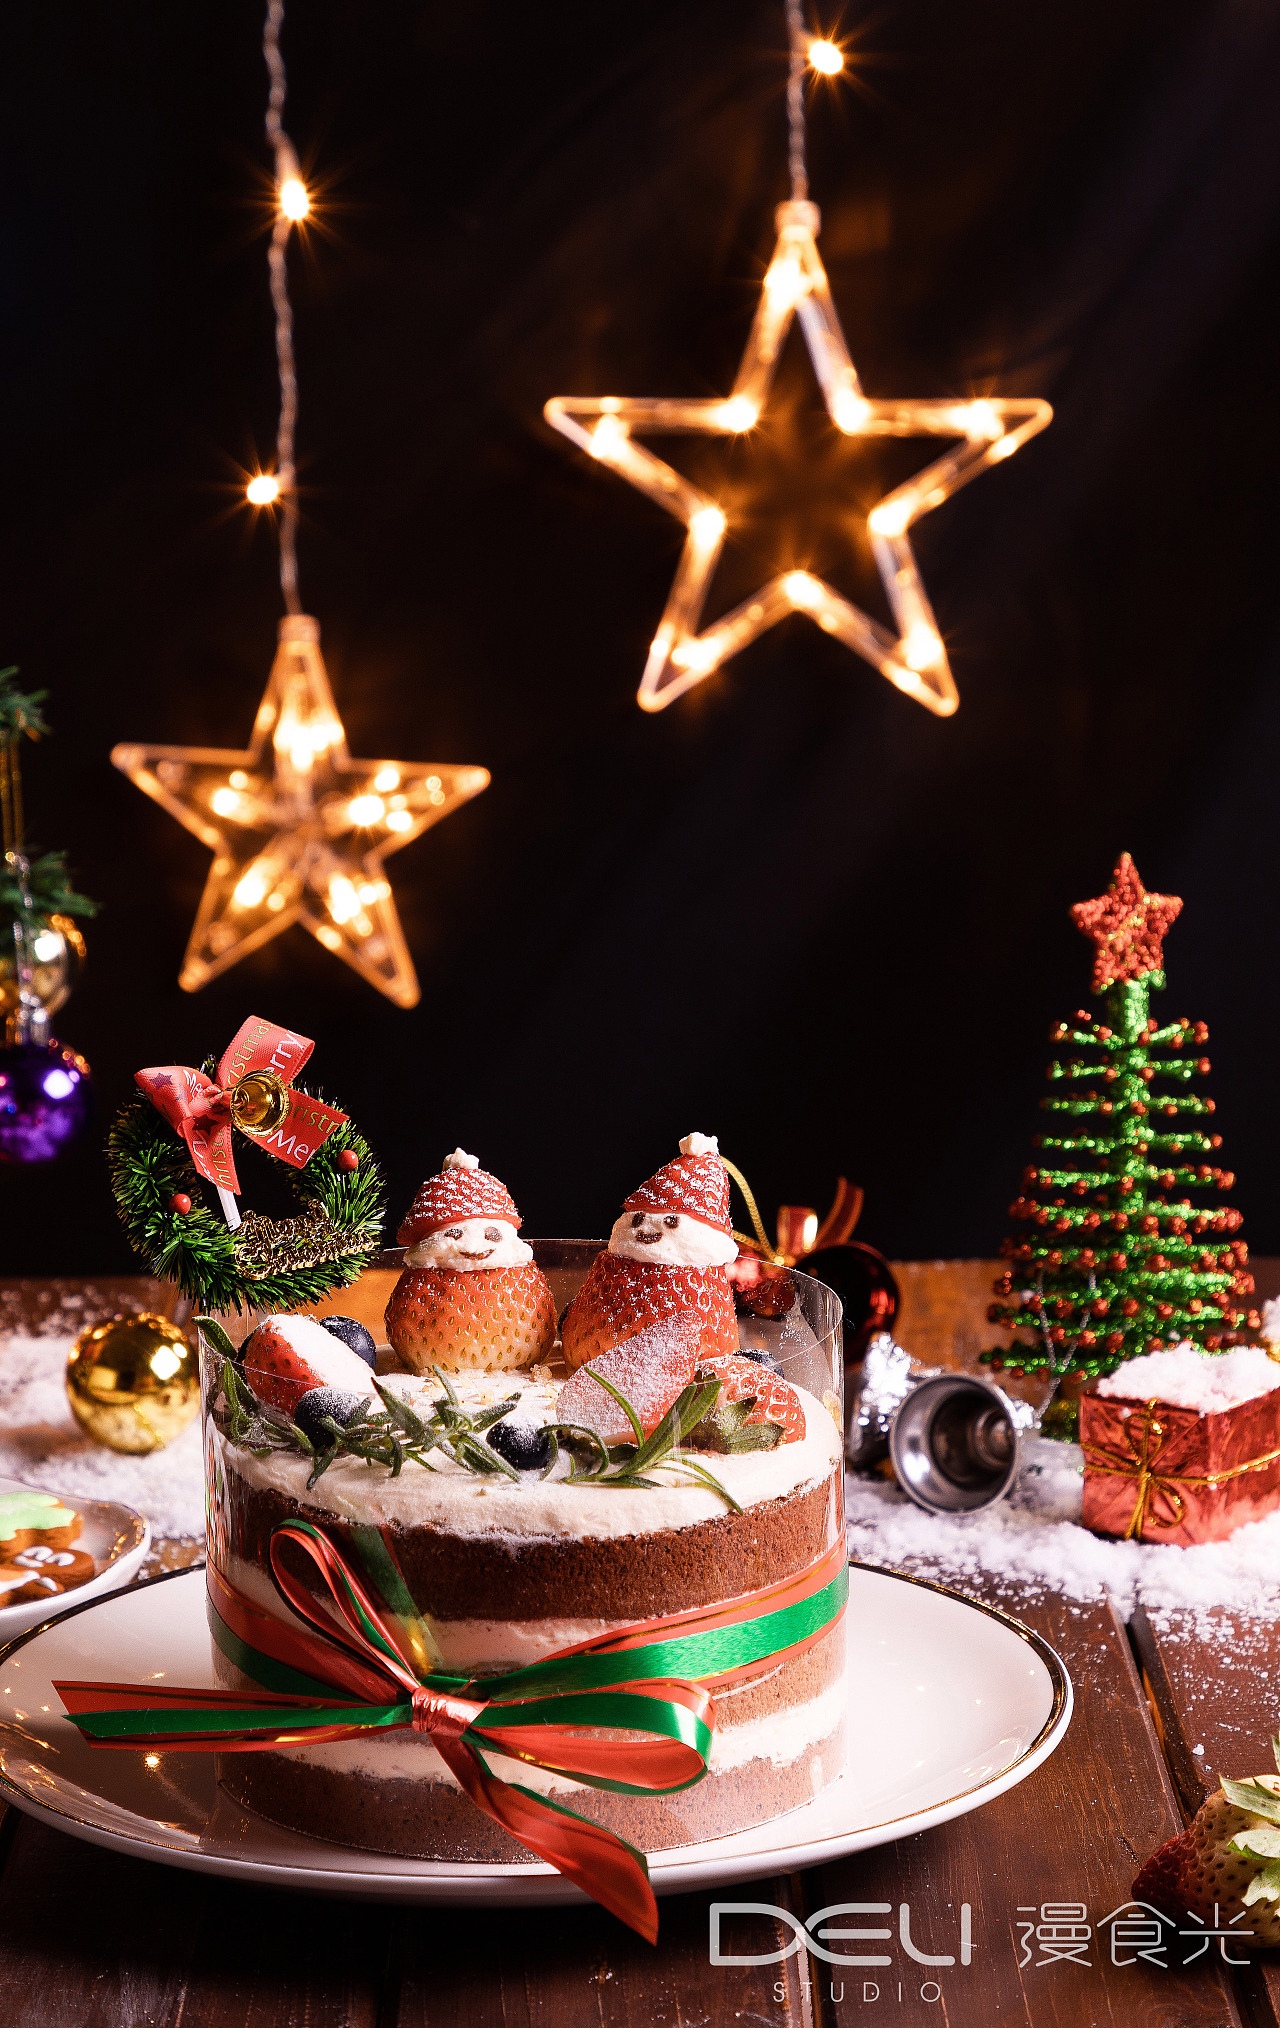 DIY圣诞节美食大餐 帅康电烤箱为你烤出火鸡等各式美味